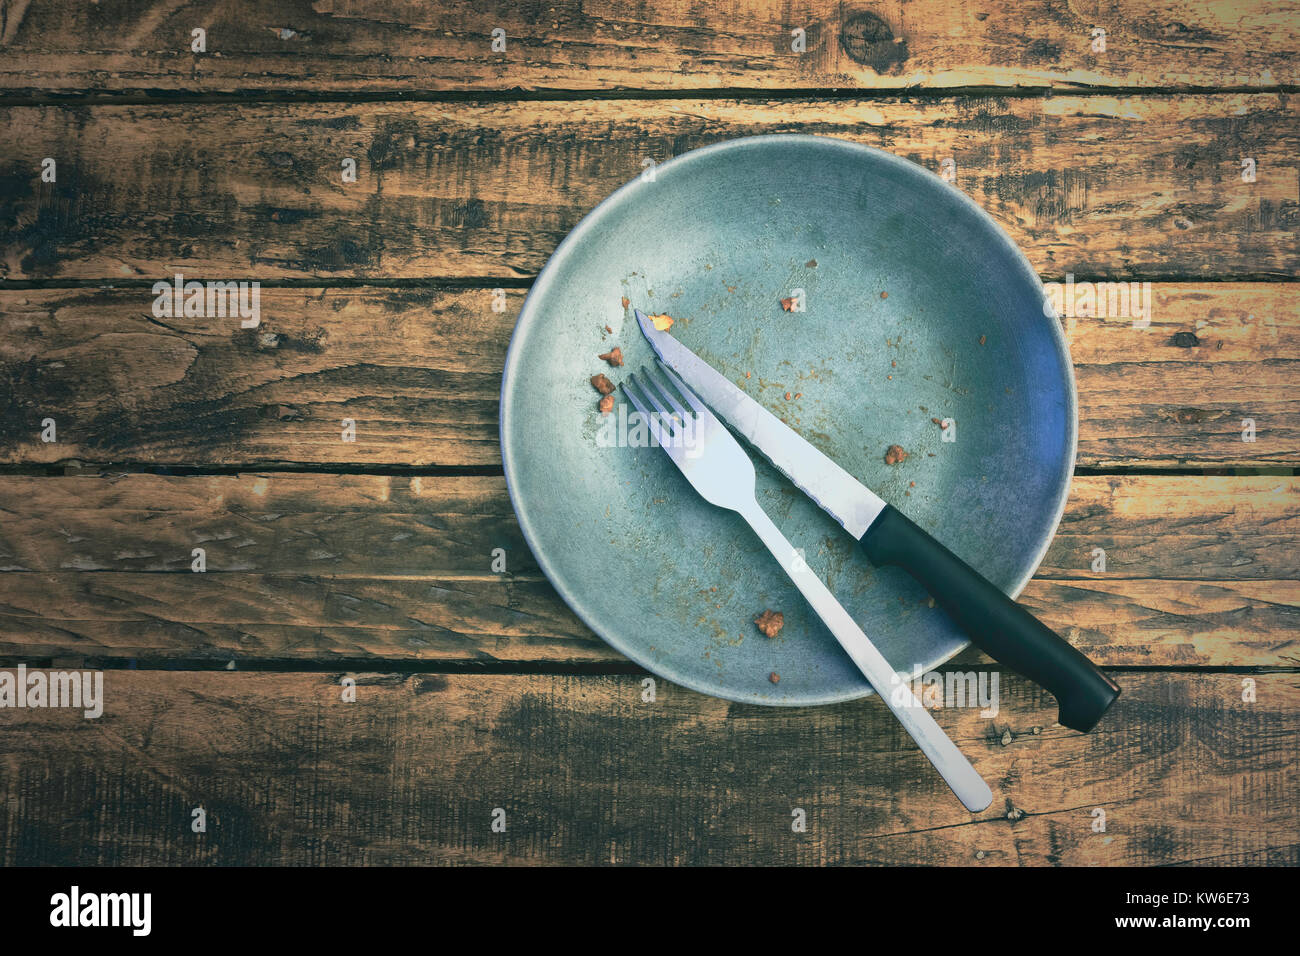 Top View oder flach Bild eines schmutzigen Teller, nachdem sie den Teller auf einem grungy hölzernen Tisch gegessen. Essen Konzept. Stockfoto